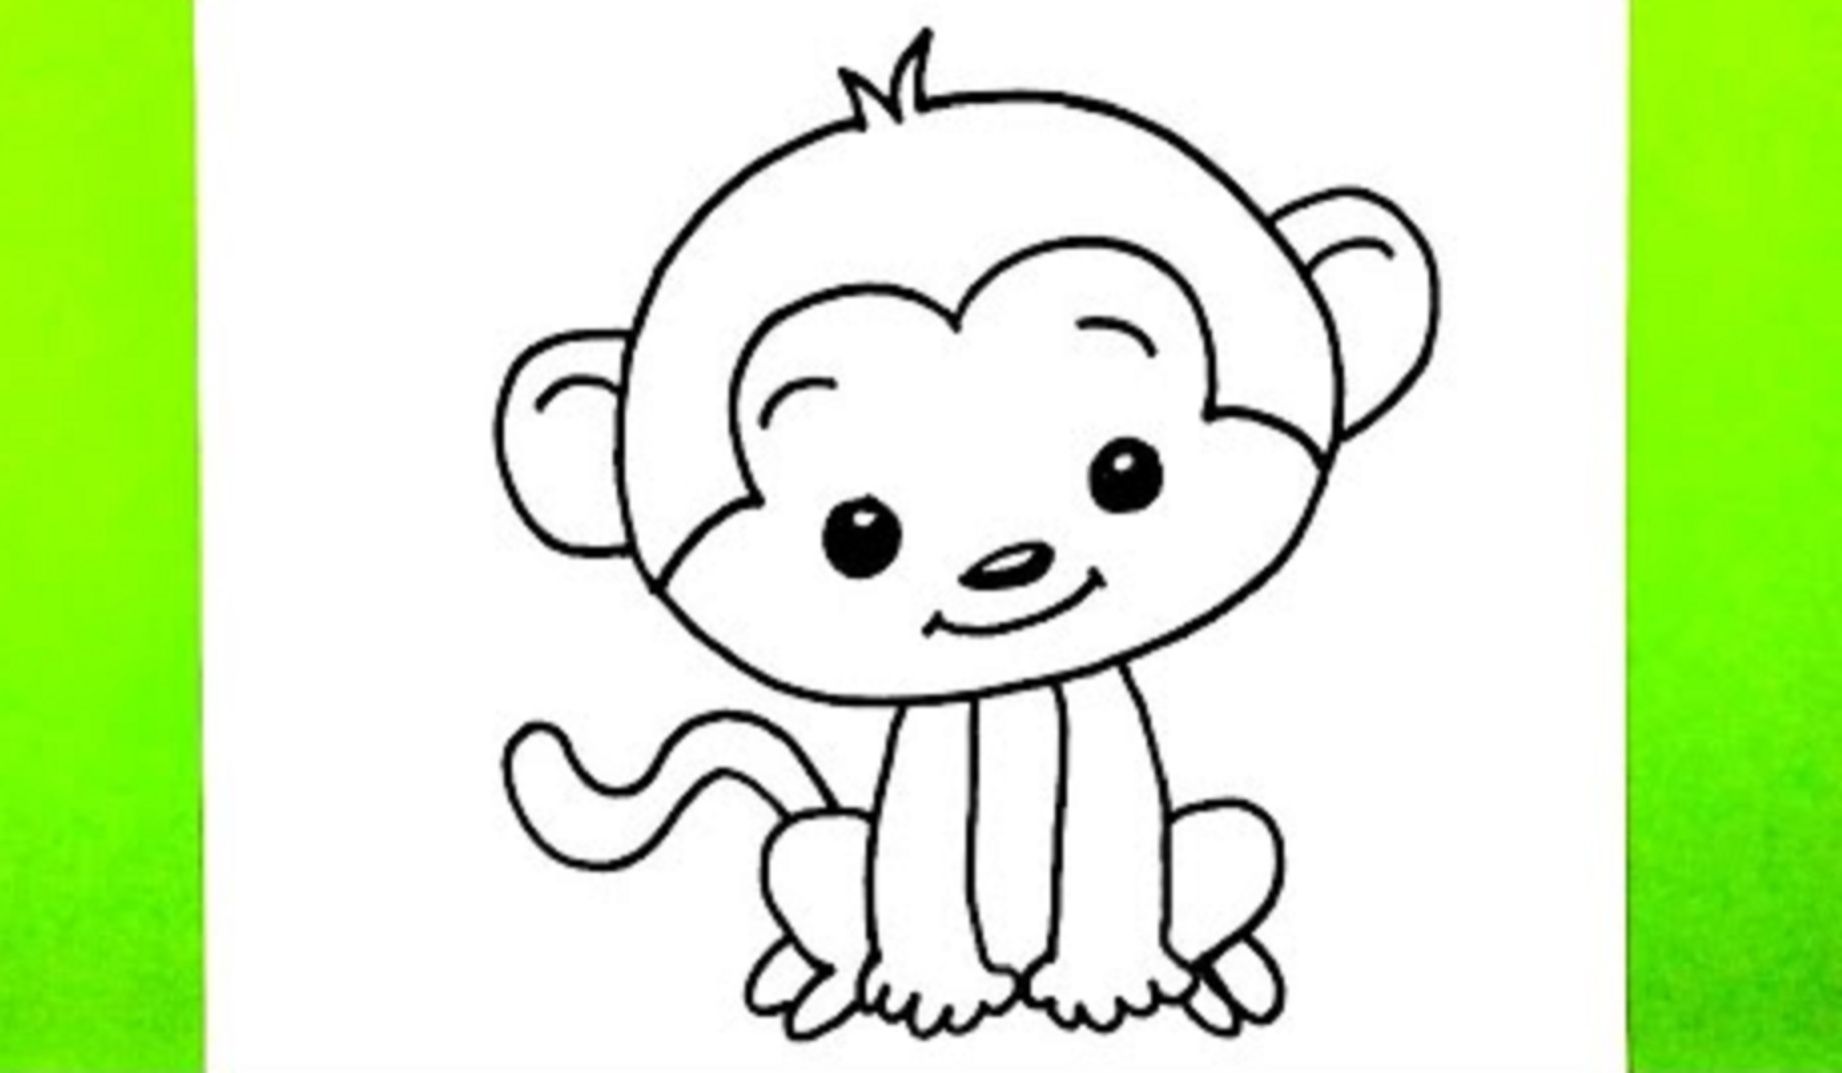 今天我们来画一只猴子!